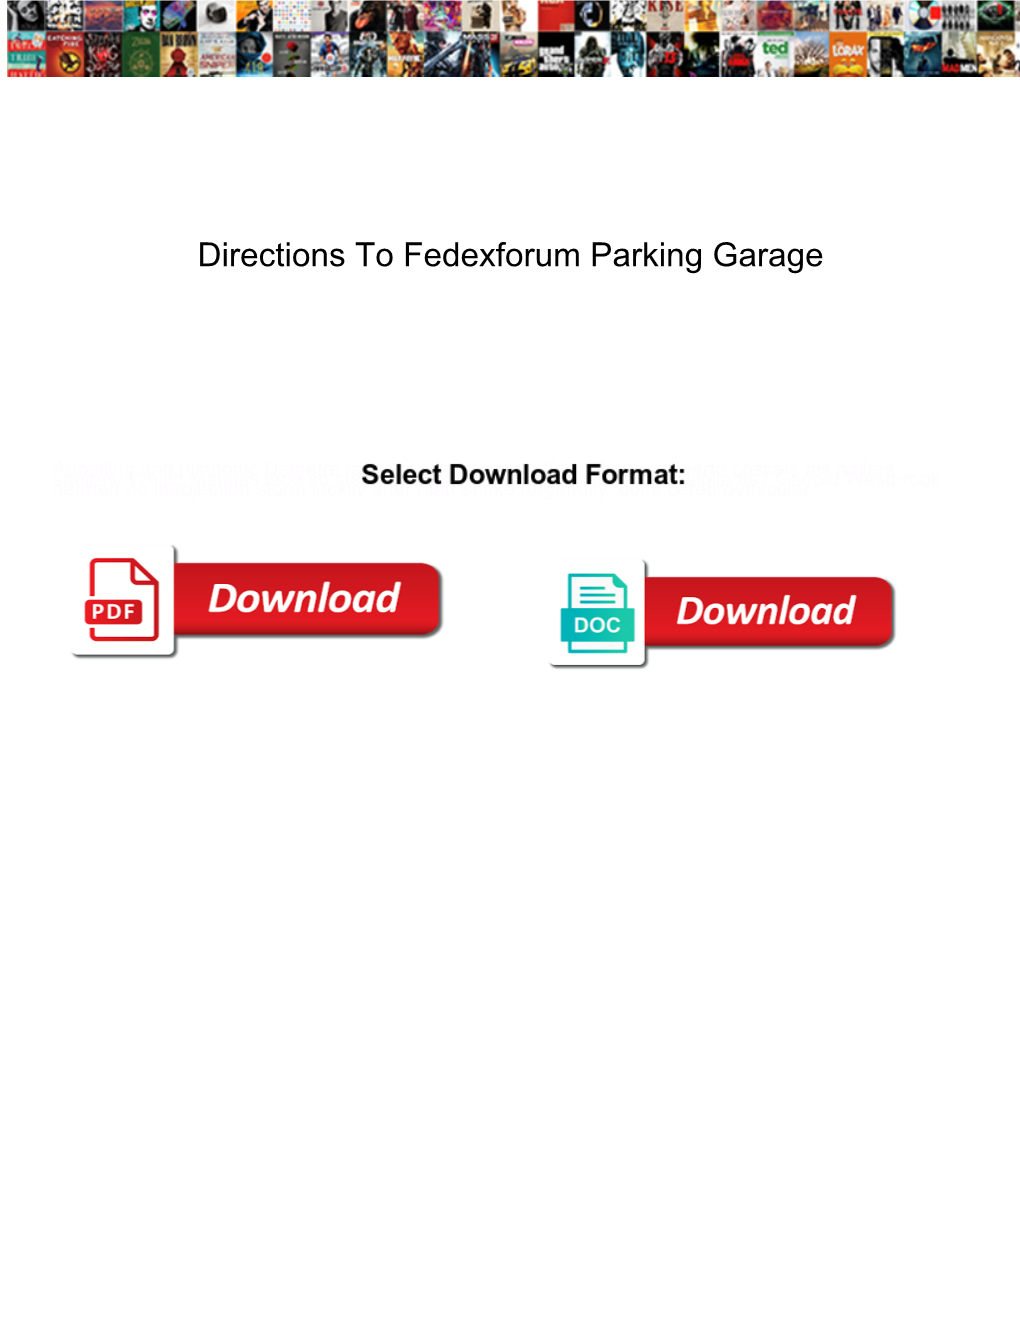 Directions to Fedexforum Parking Garage